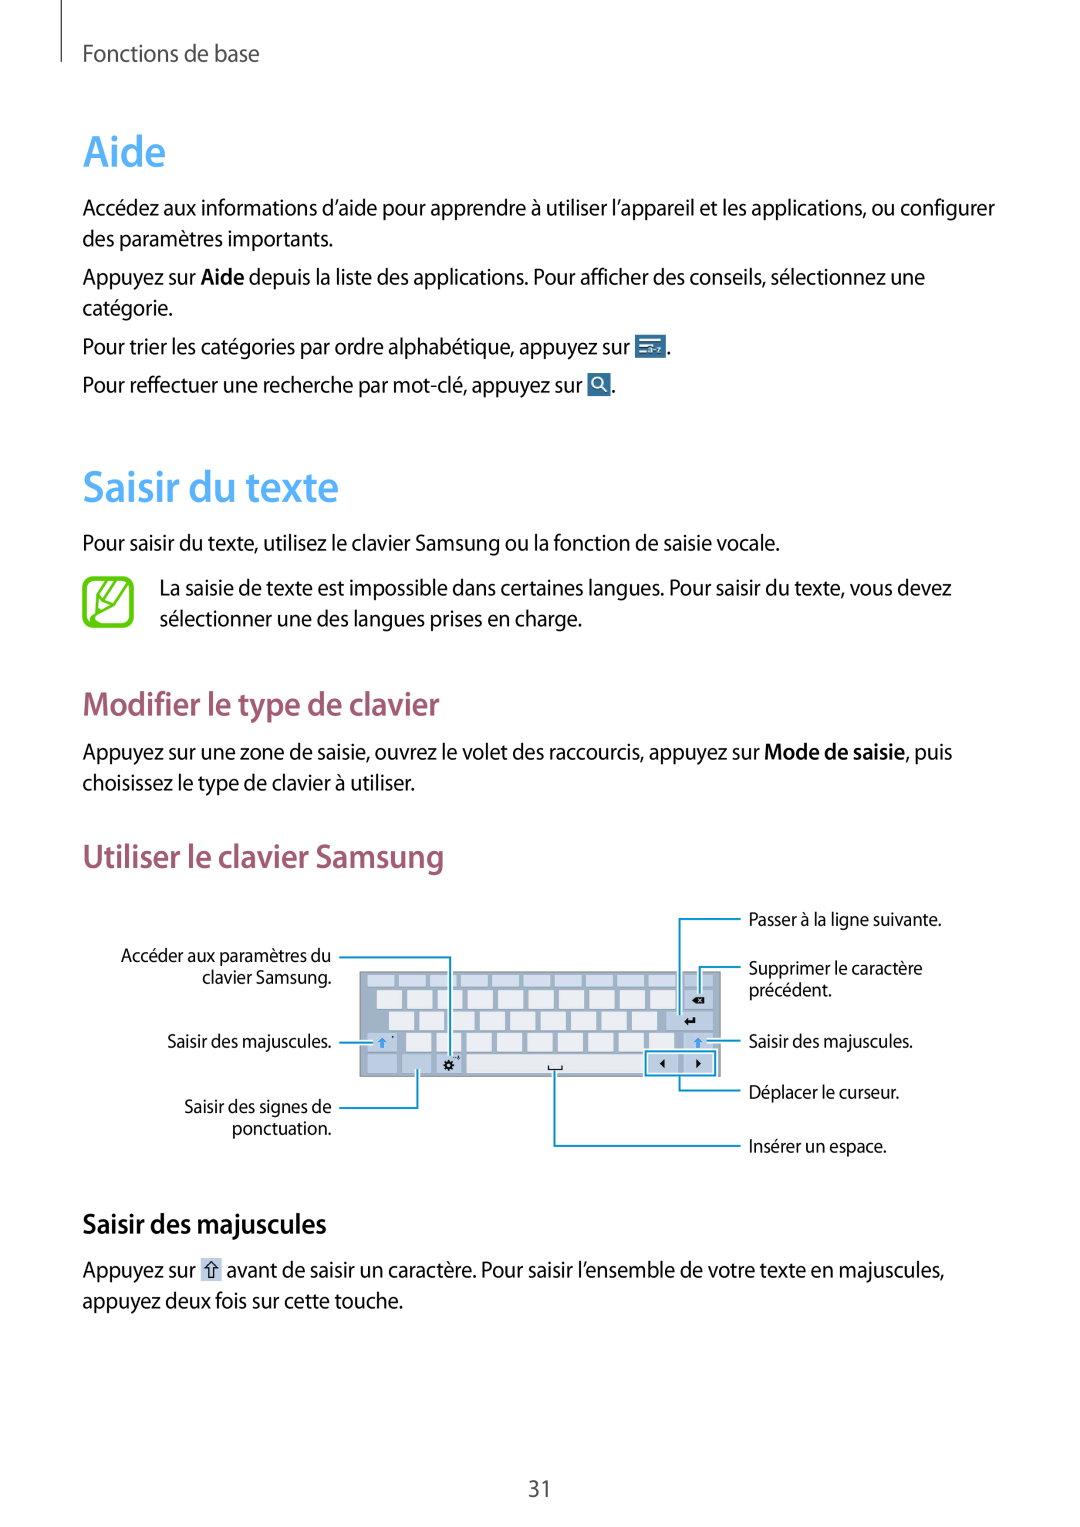 Samsung SM-T533NZWEXEF Aide, Saisir du texte, Modifier le type de clavier, Utiliser le clavier Samsung, Fonctions de base 